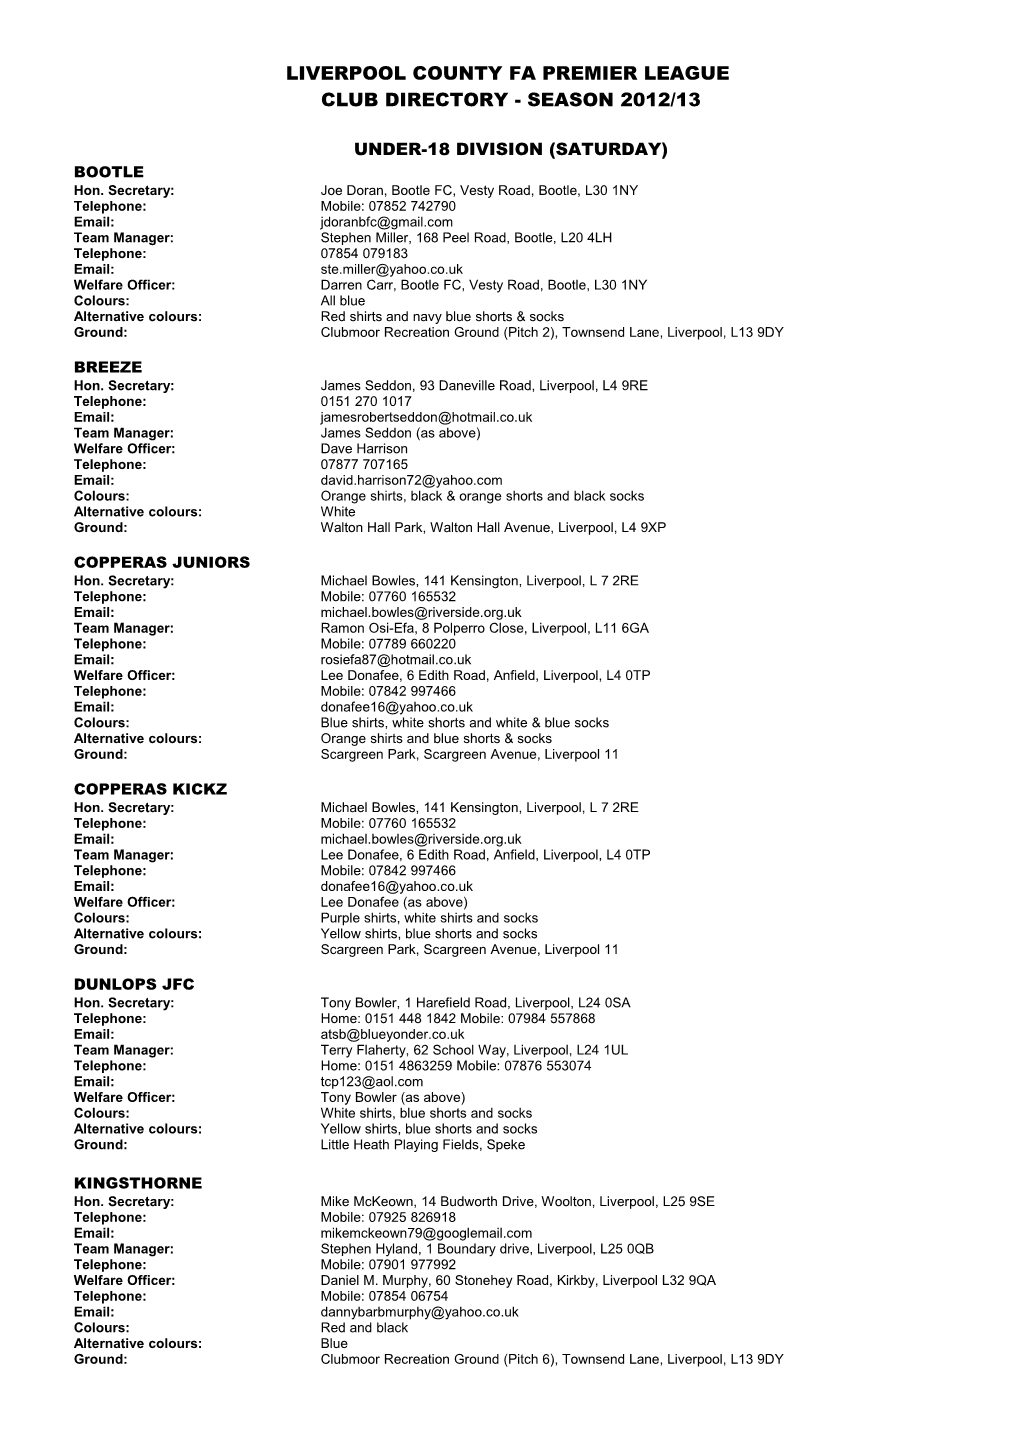 Club Directory Season 2007/08